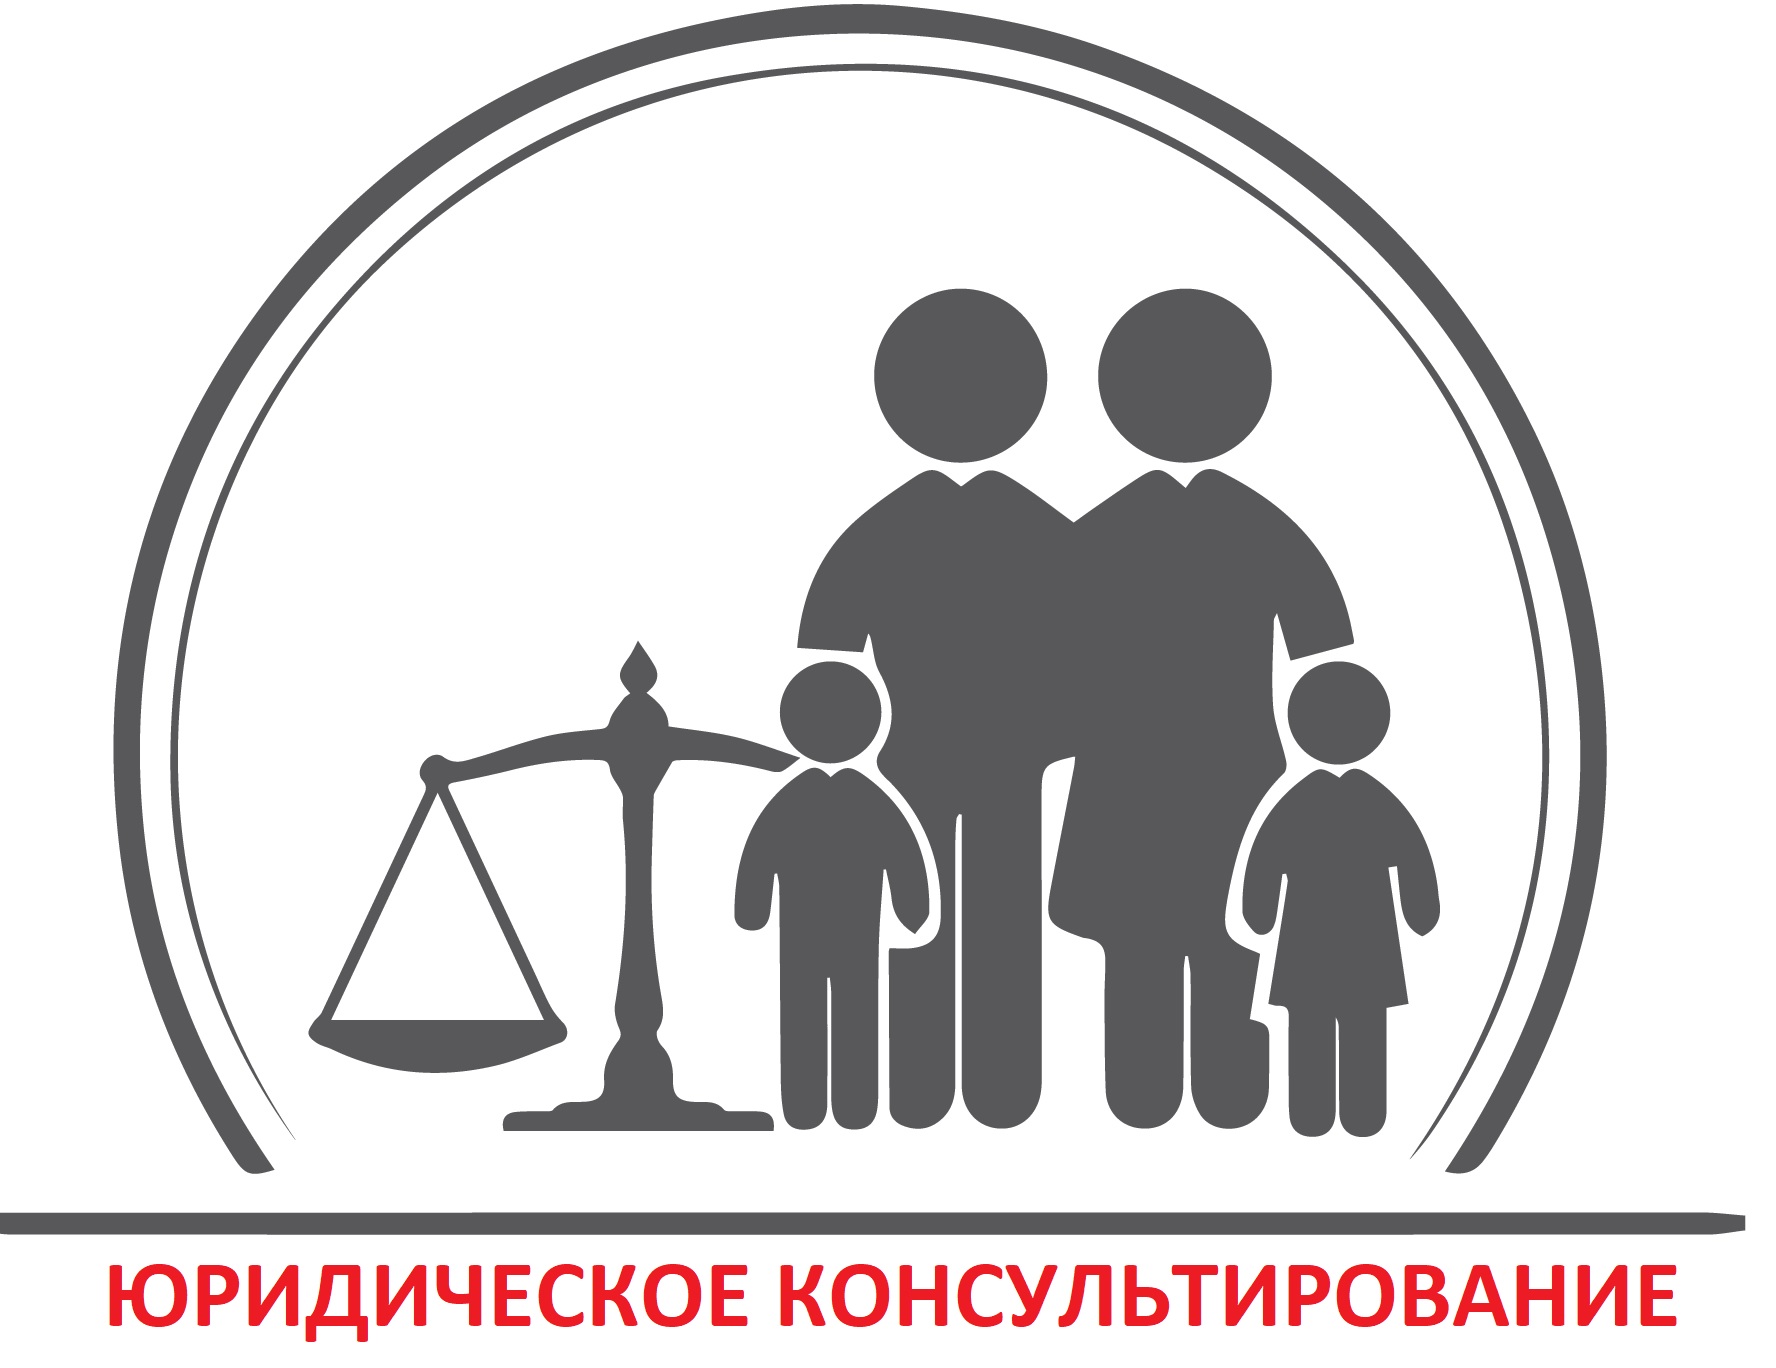 Юридическое консультирование семей с детьми по правовым вопросам.